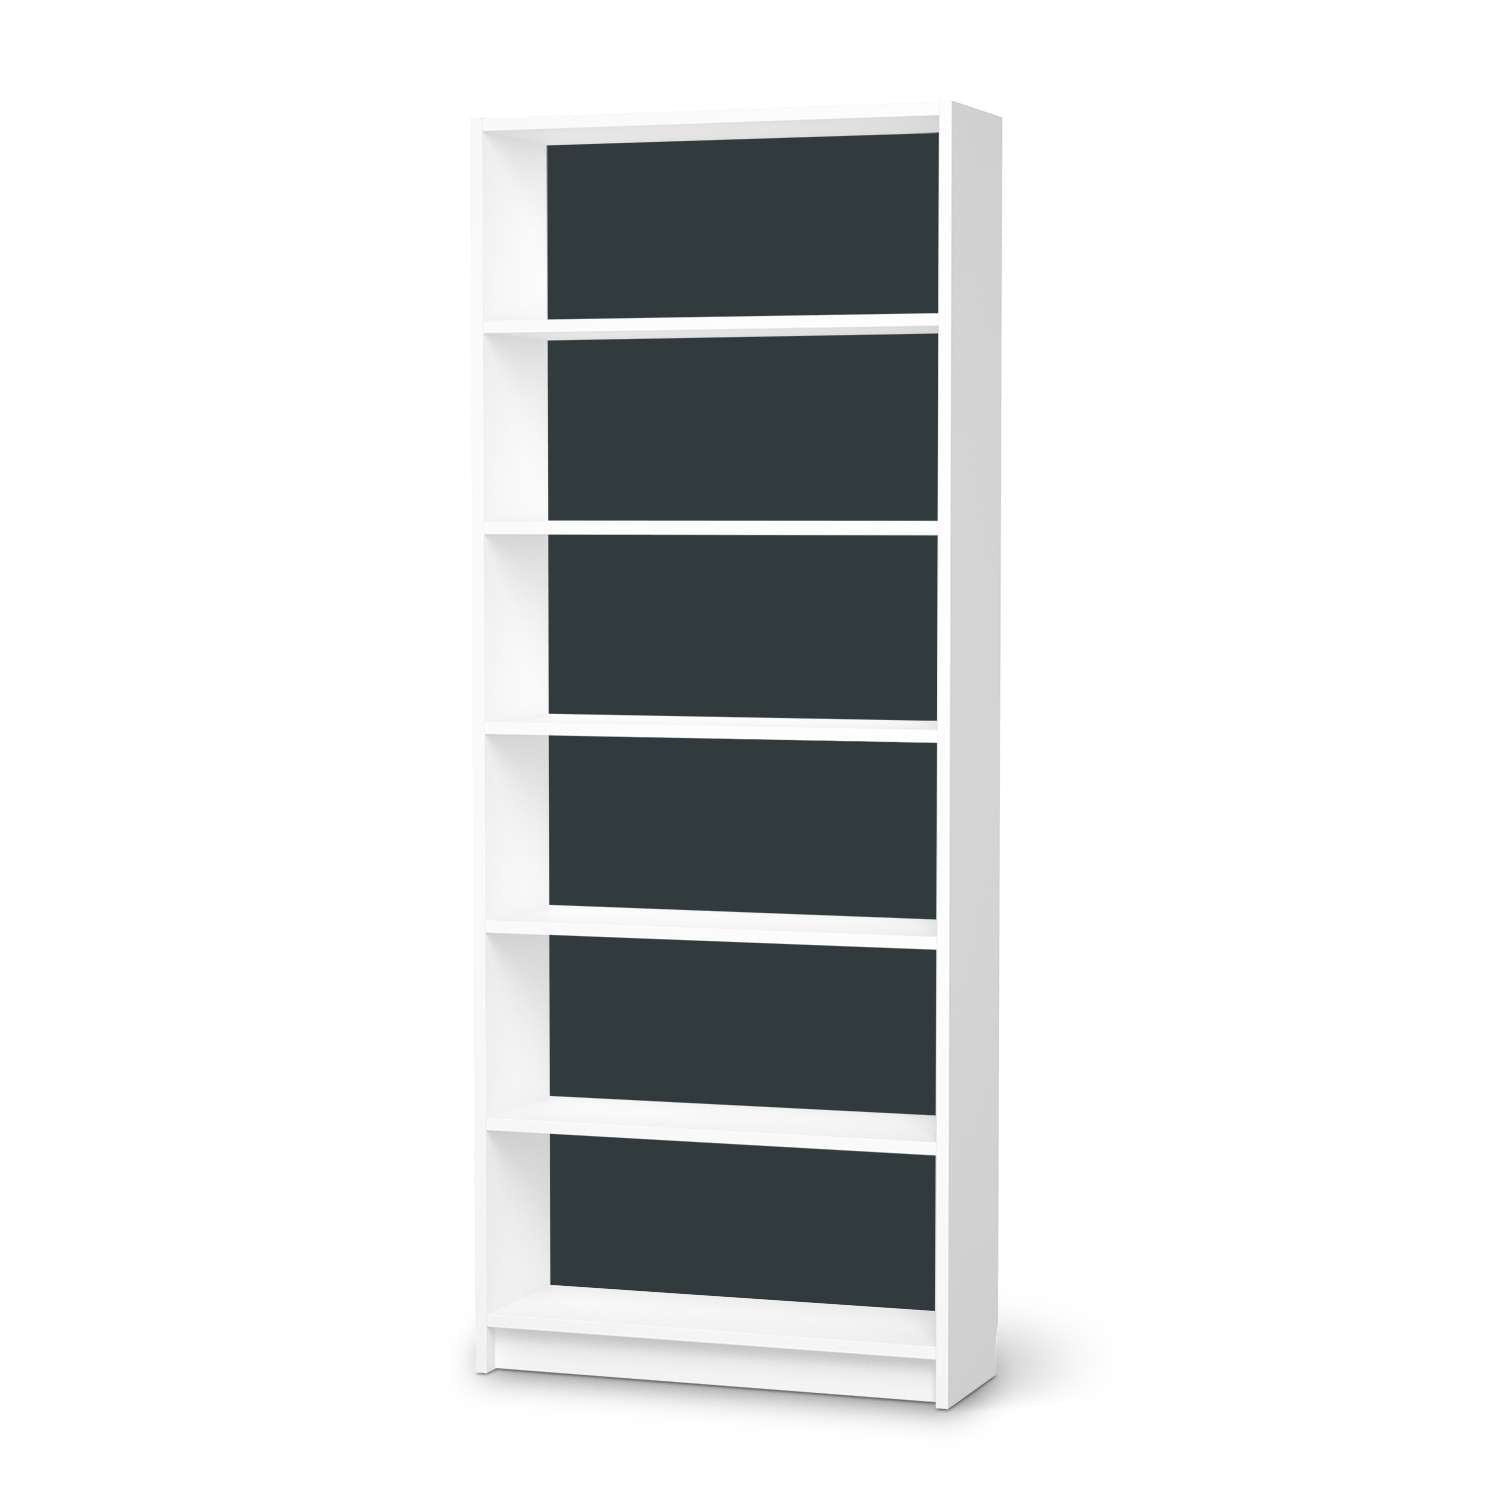 Klebefolie IKEA Billy Regal 6 F?cher - Design: Blaugrau Dark von creatisto